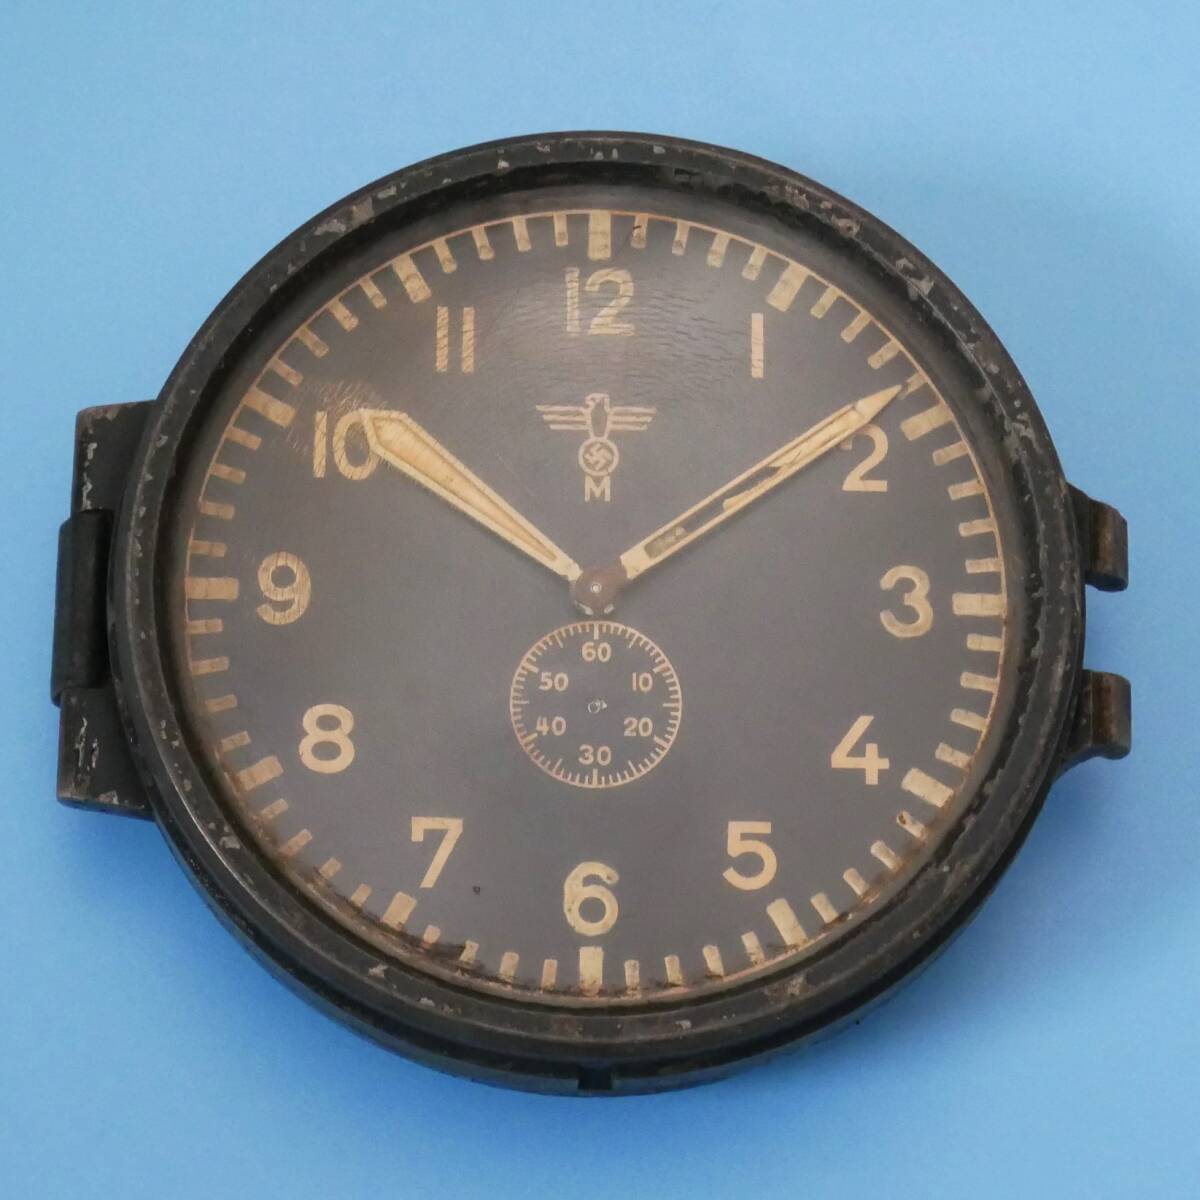 ユンハンス ドイツ軍 時計 計器 JUNGHANS 戦前 戦時 資料_画像3